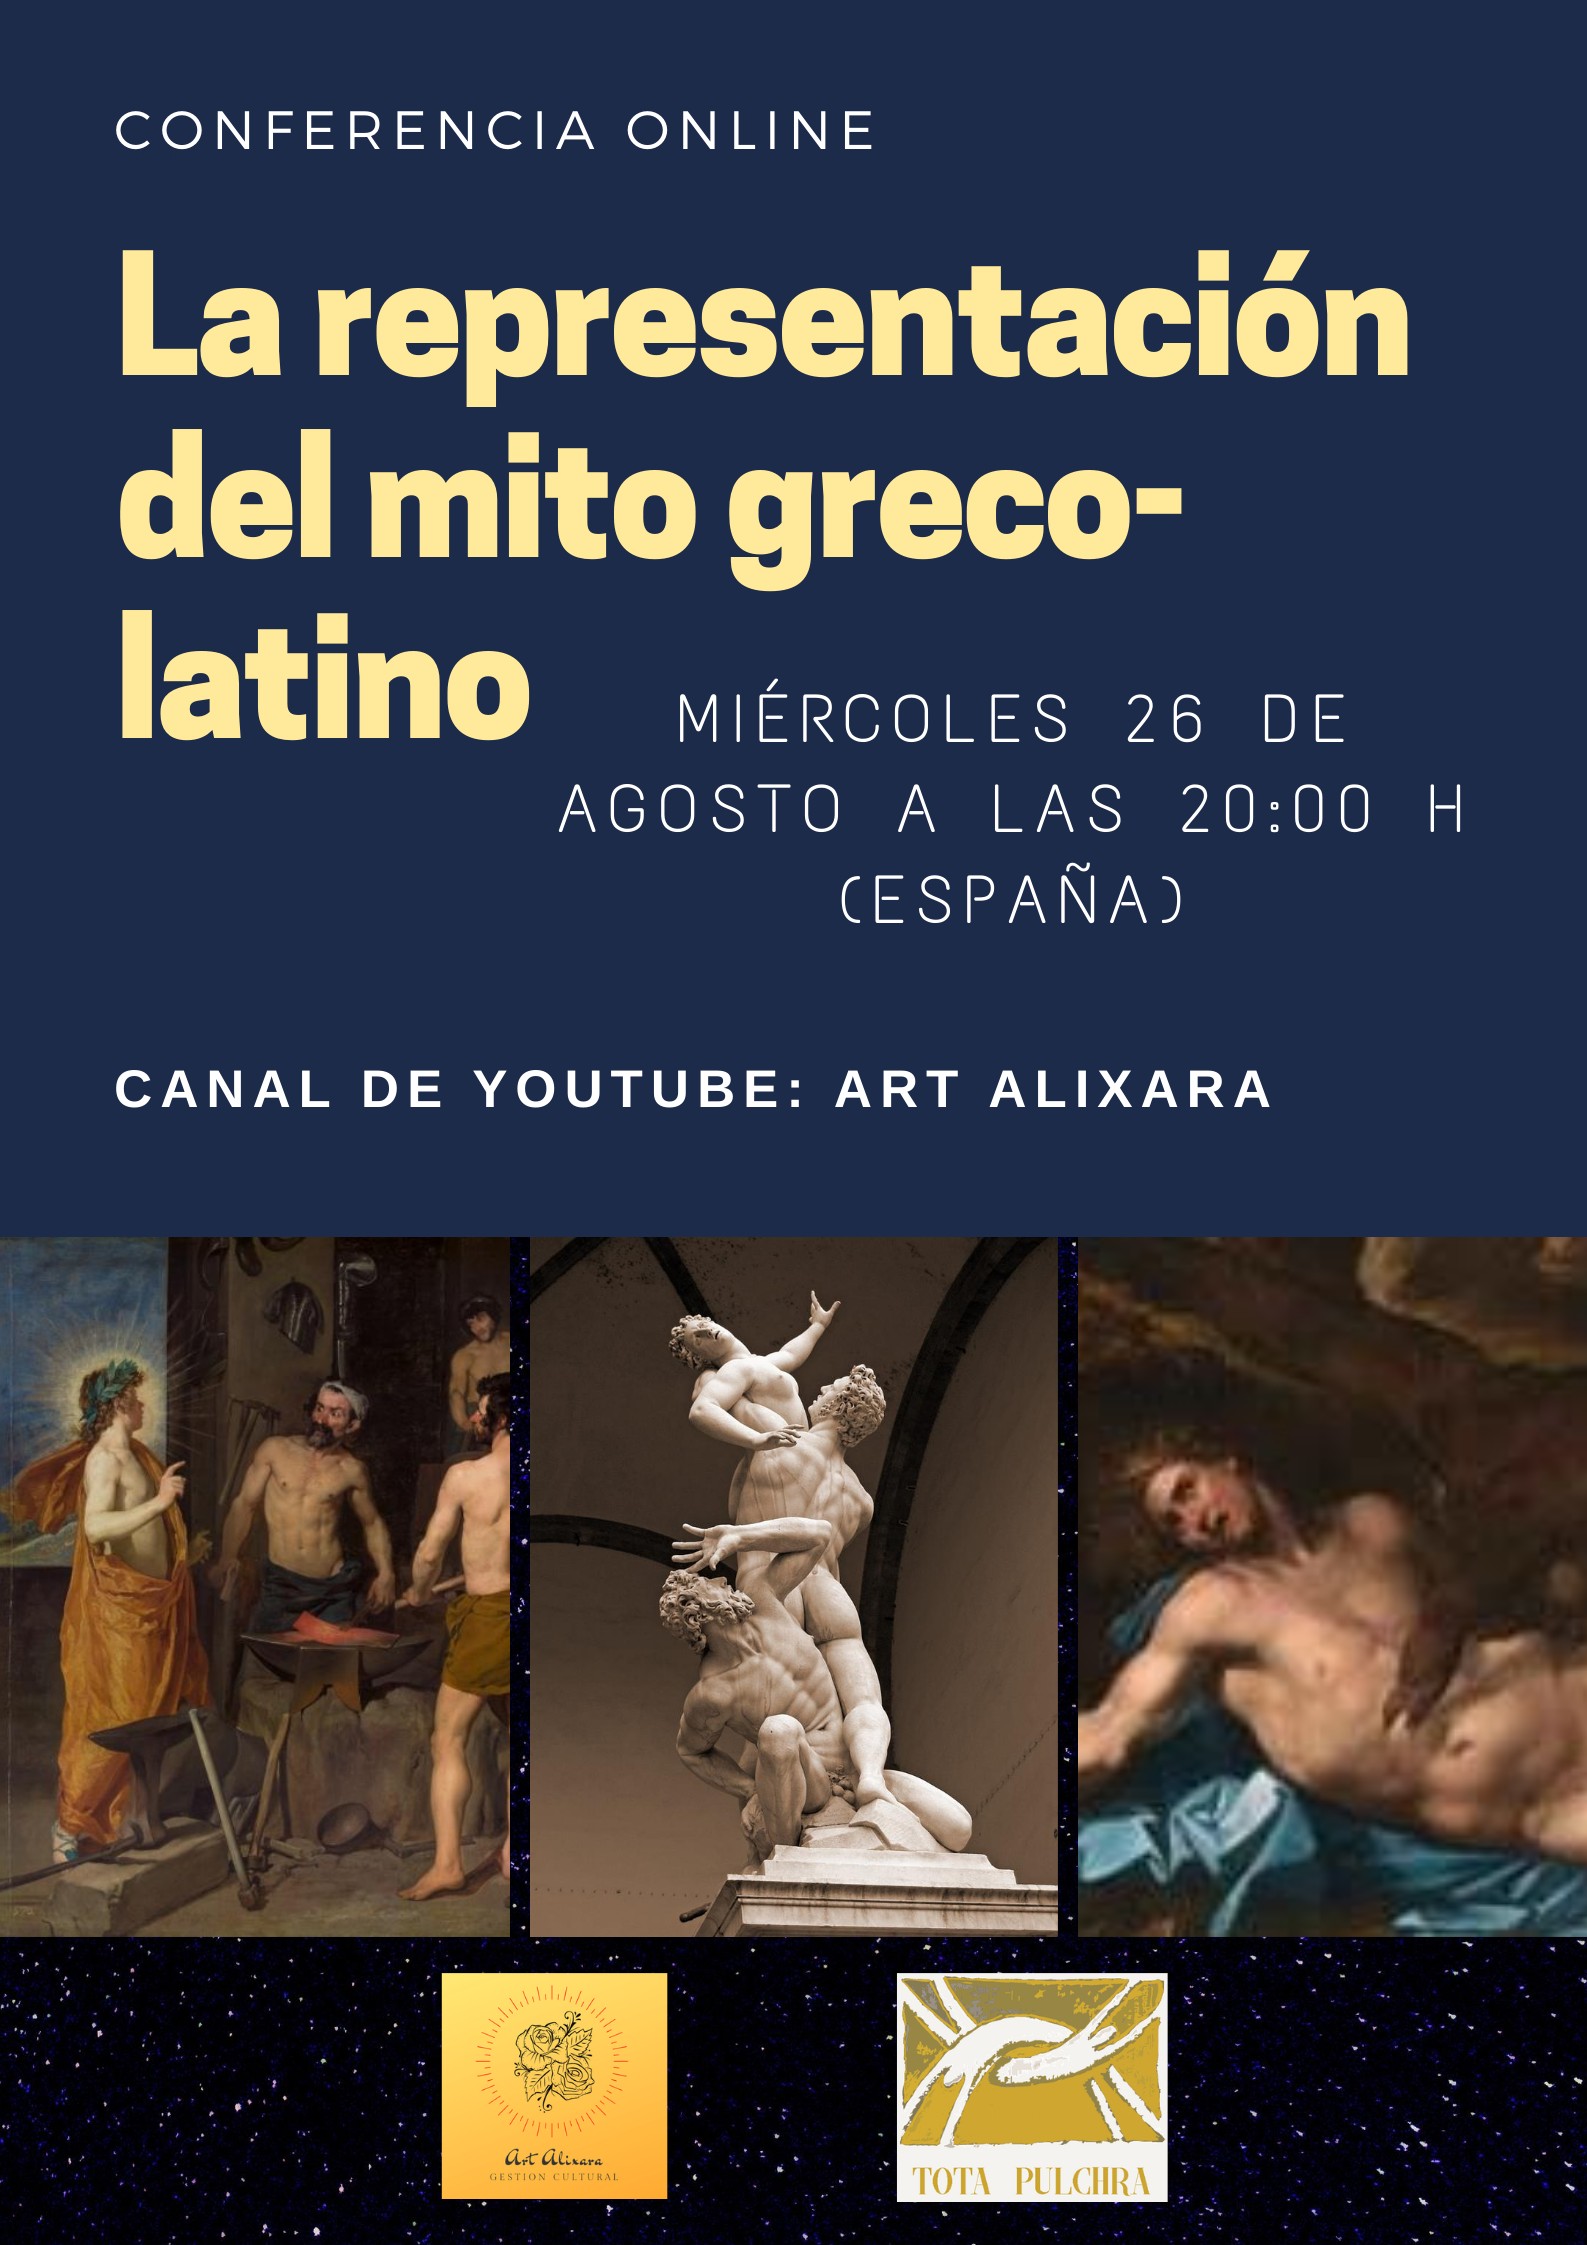 La representación del Mito Greco-latino